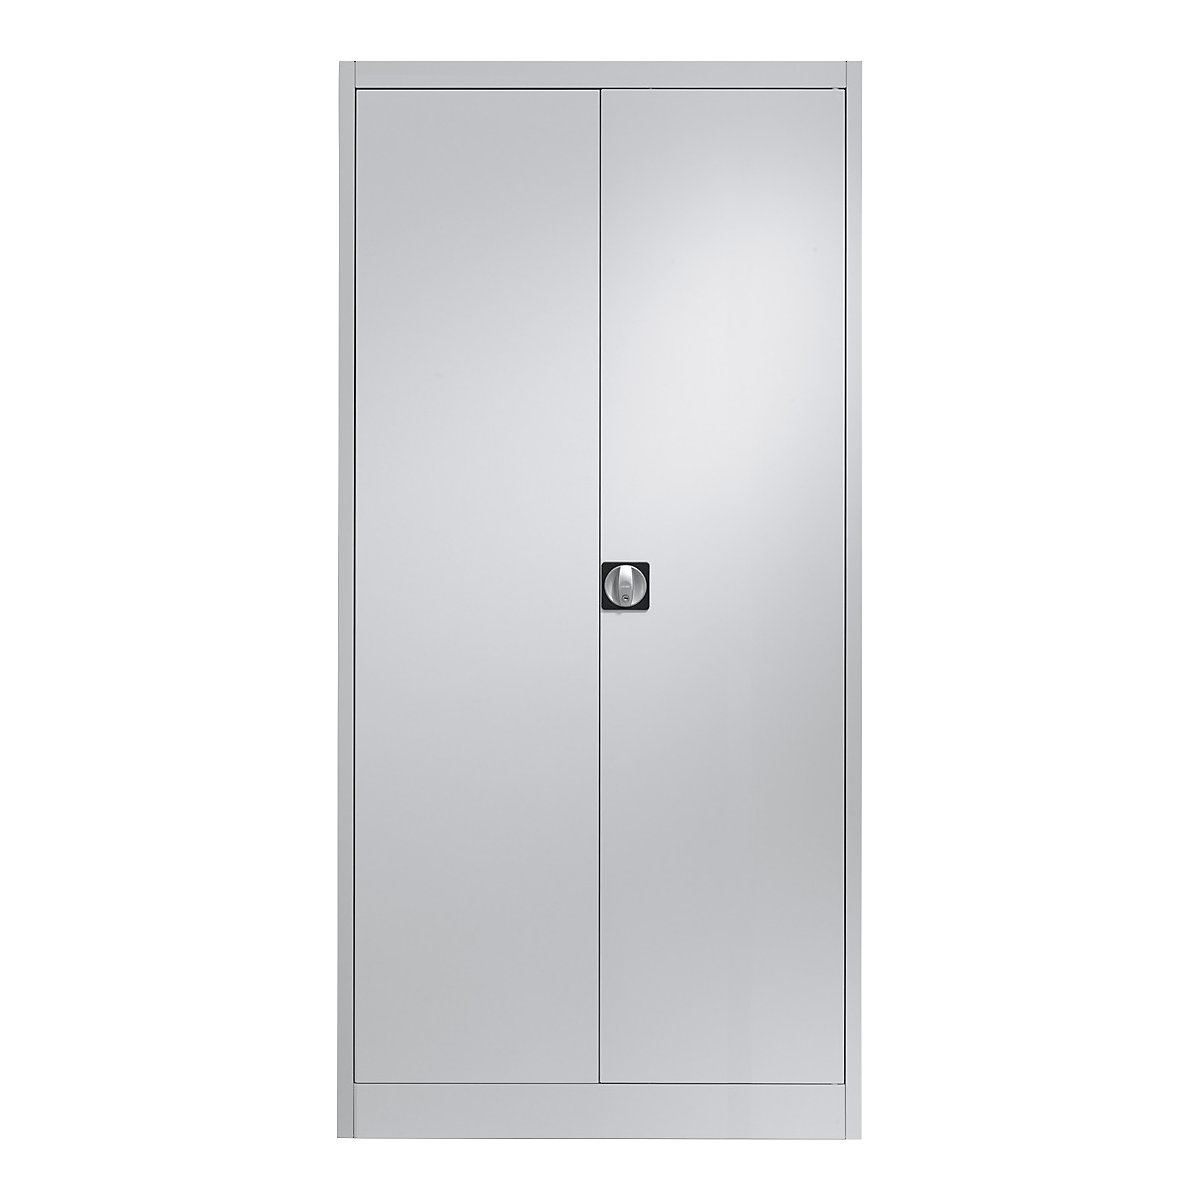 Steel cabinet with double doors – mauser, 4 shelves, 600 mm deep, light grey-7